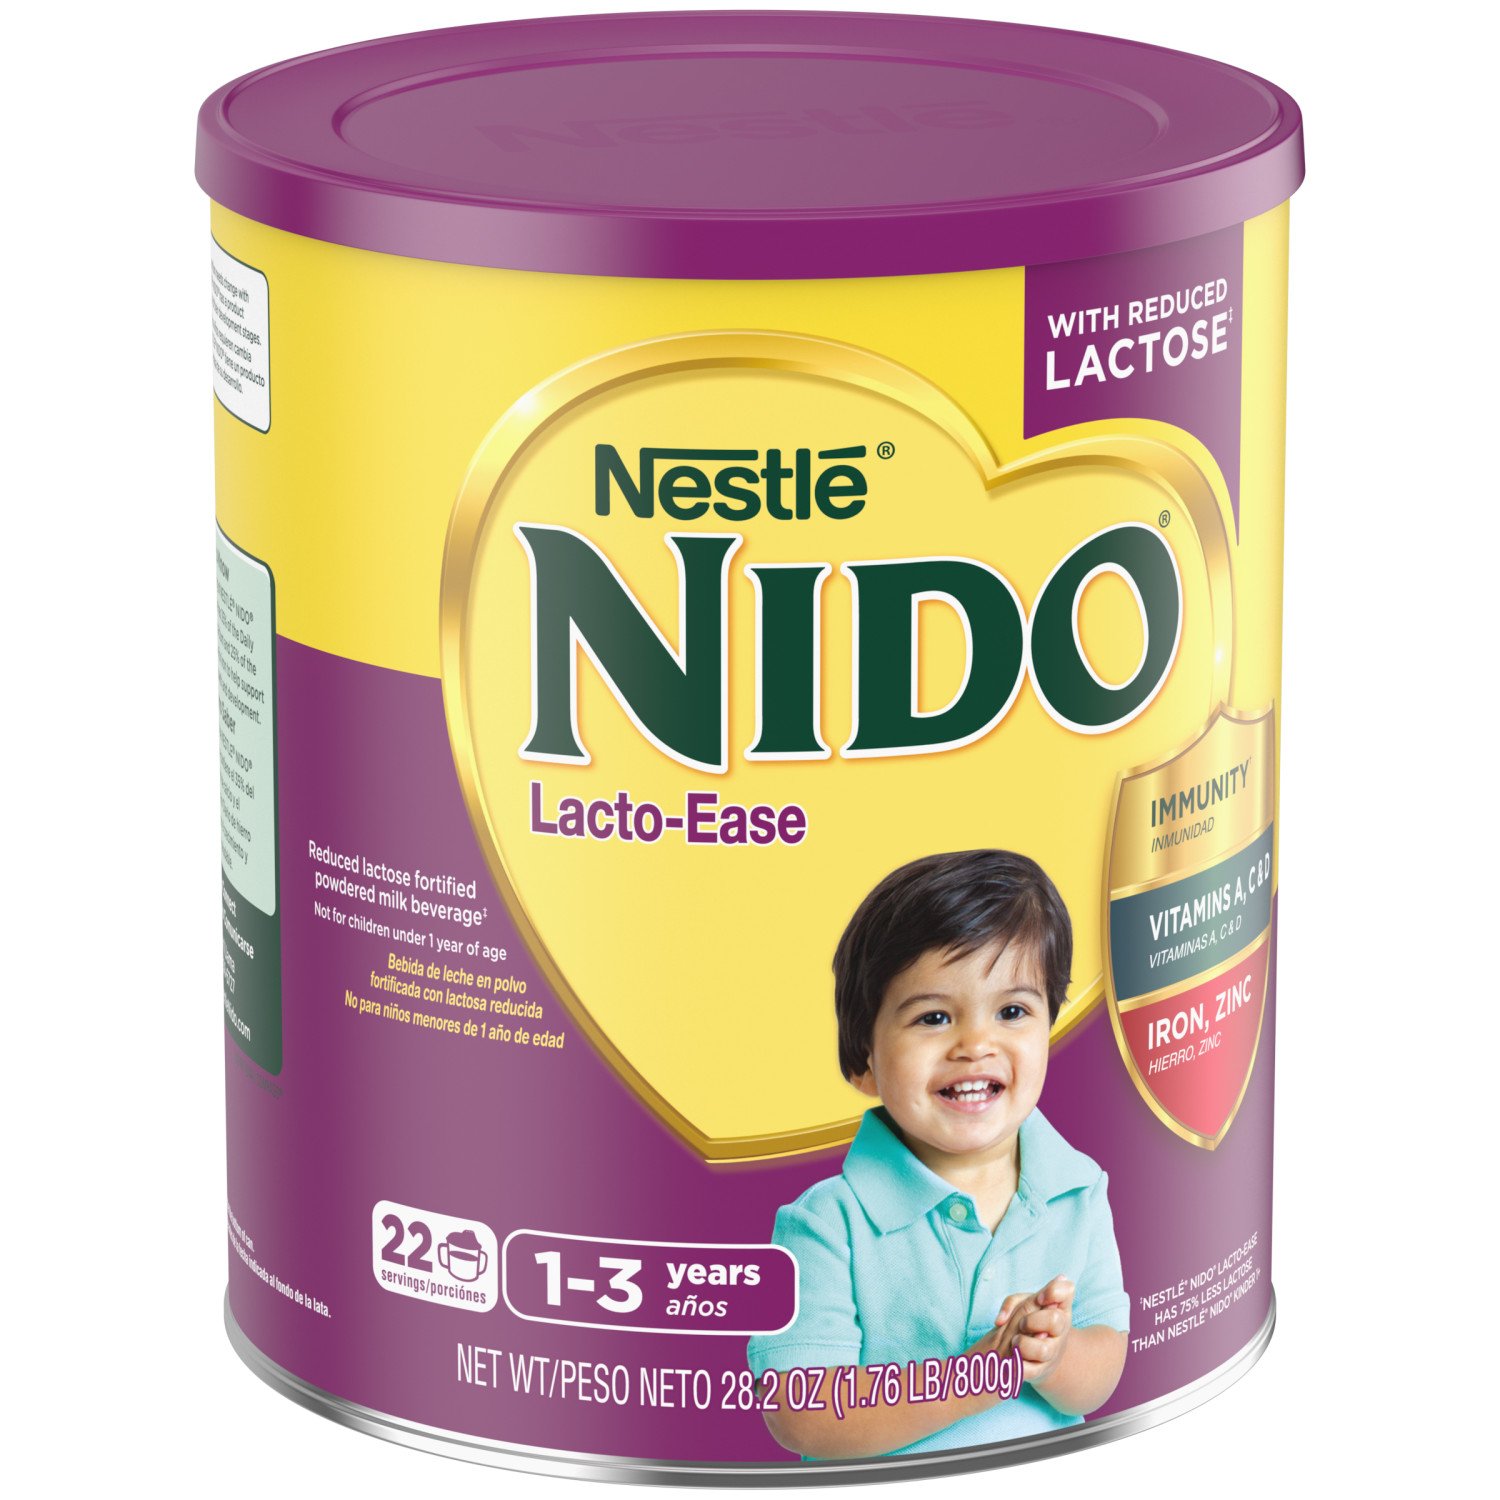 Nido Kinder 1+ Toddler Milk Beverage - Shop Milk at H-E-B